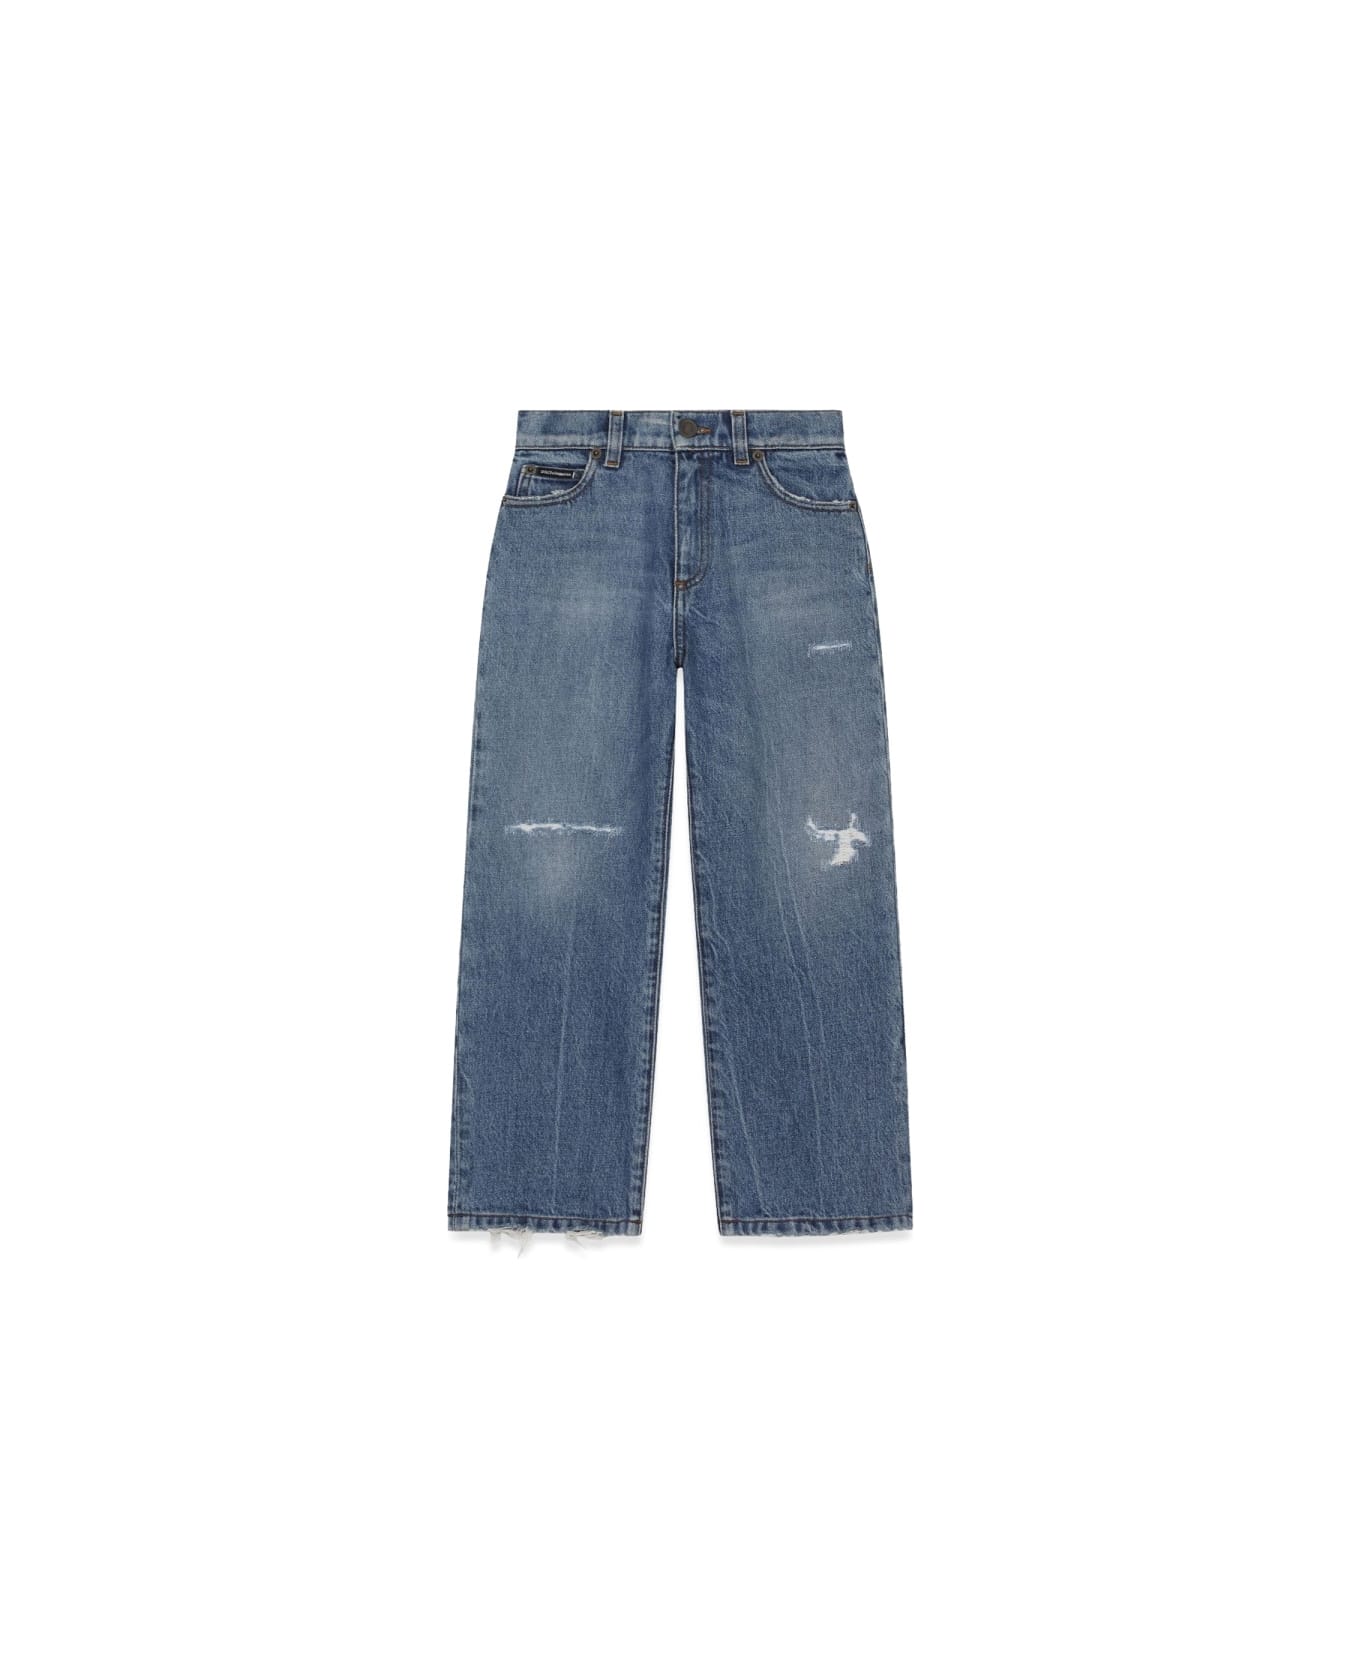 Dolce & Gabbana Worn Effect Jeans - DENIM